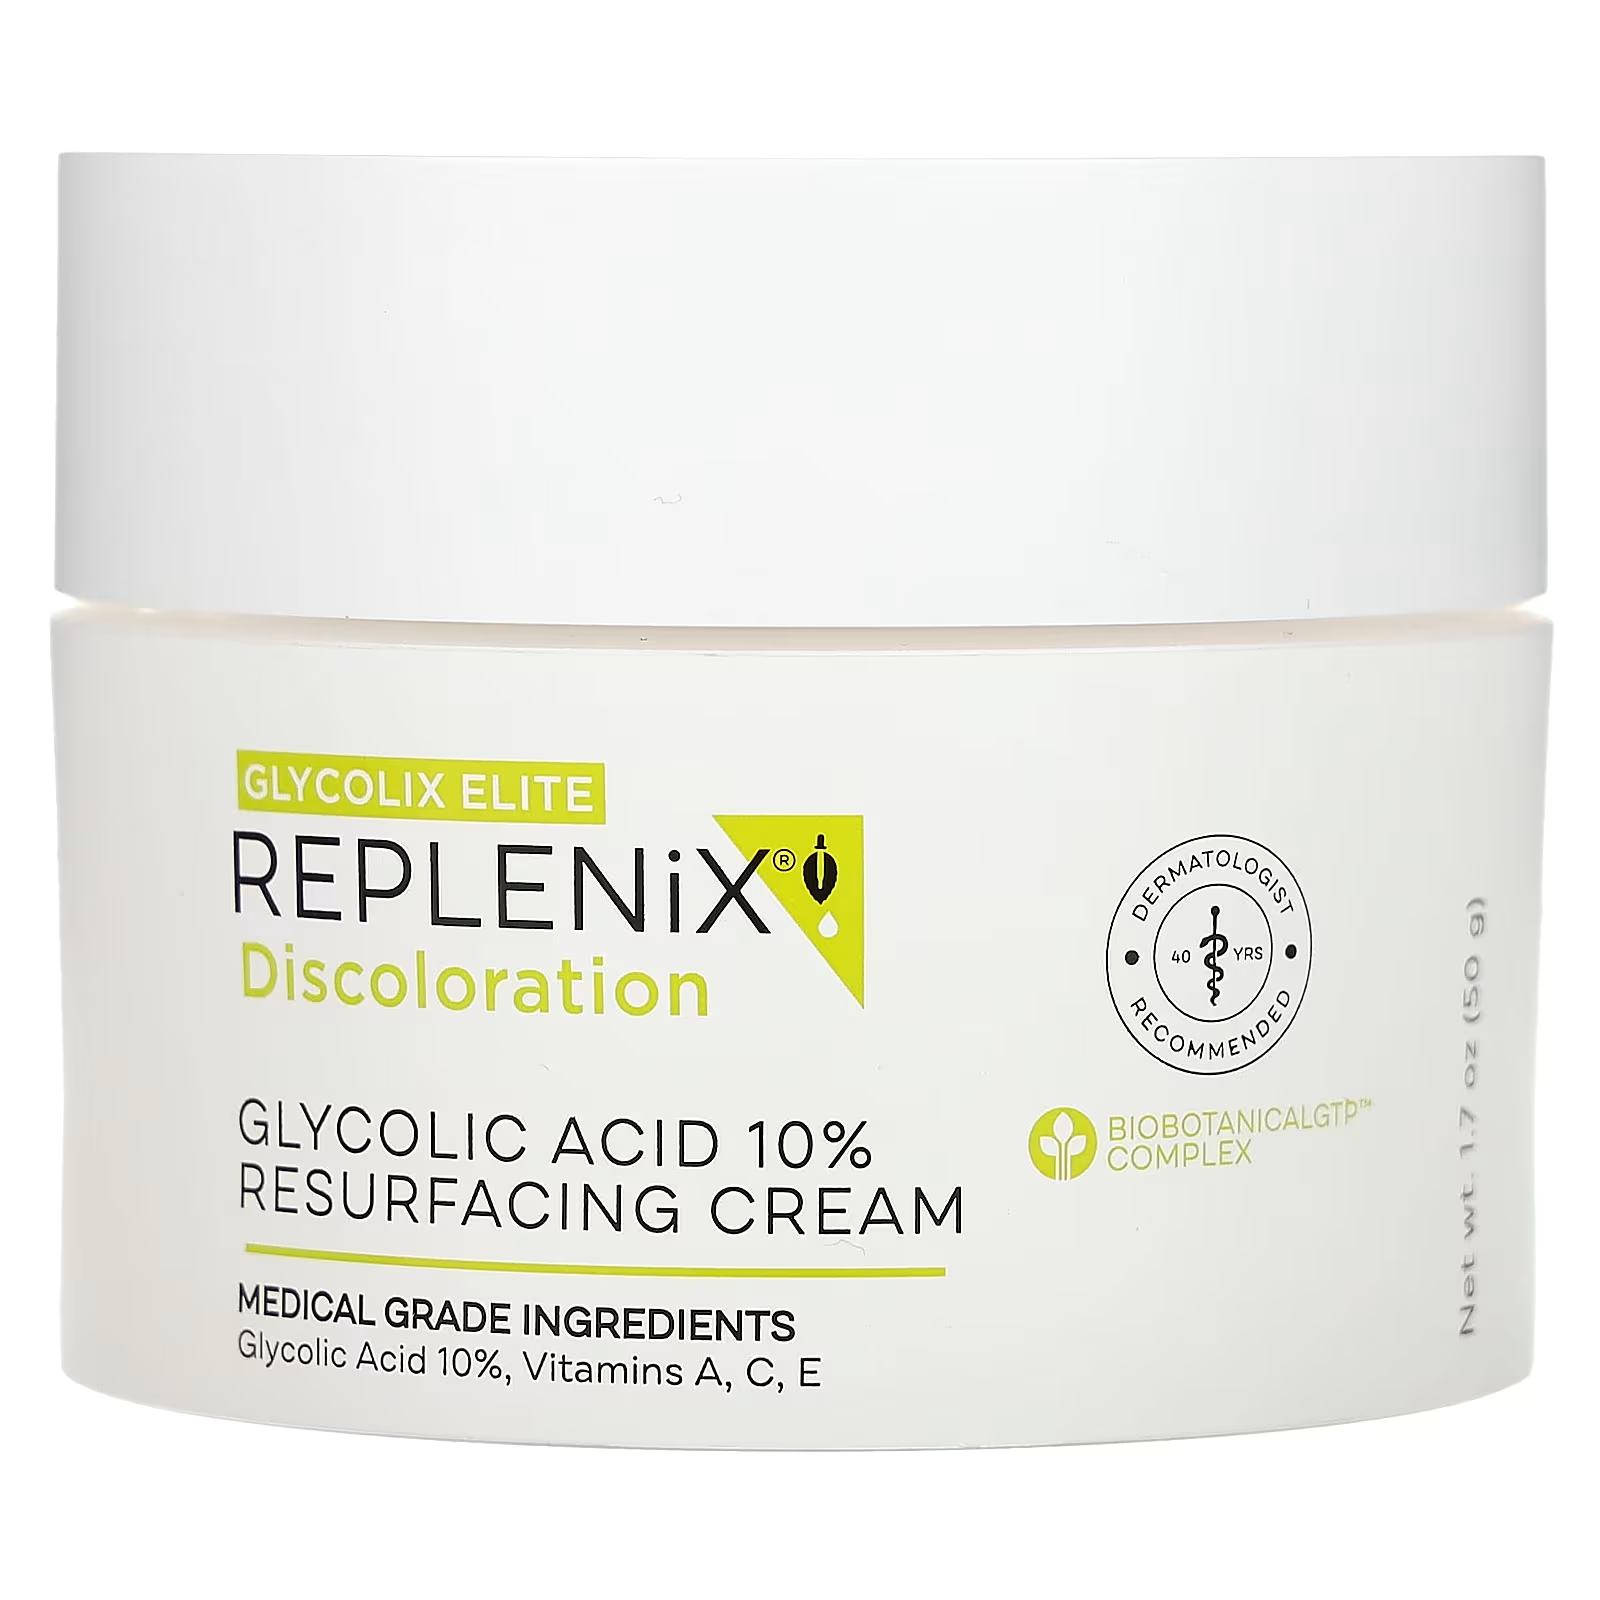 Replenix Discoloration, 10% восстанавливающий крем с гликолевой кислотой, без отдушек, 1,7 унции (50 г)